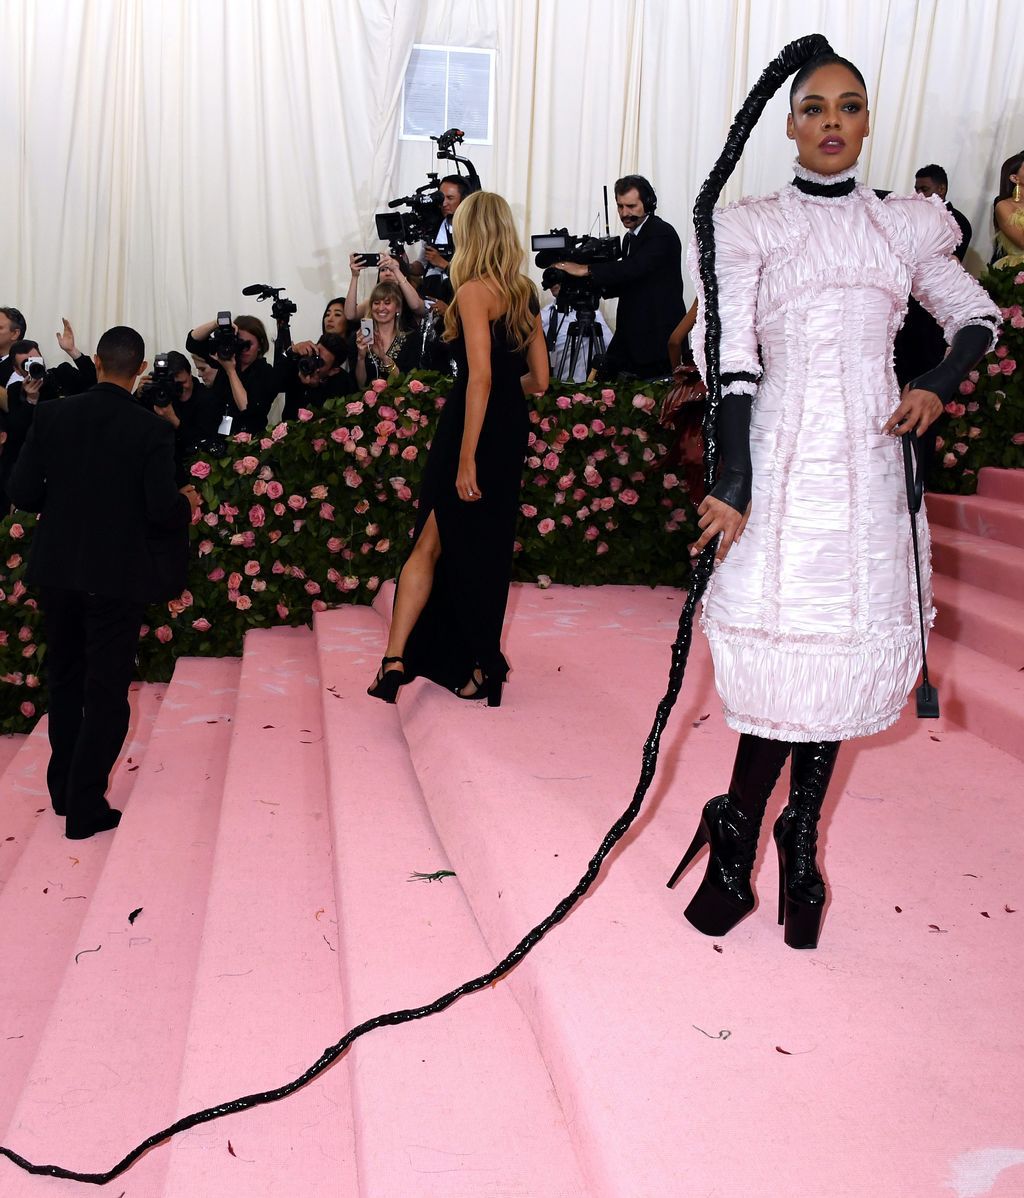 La excentricidad era esto: la alfombra roja de la Gala Met, foto a foto